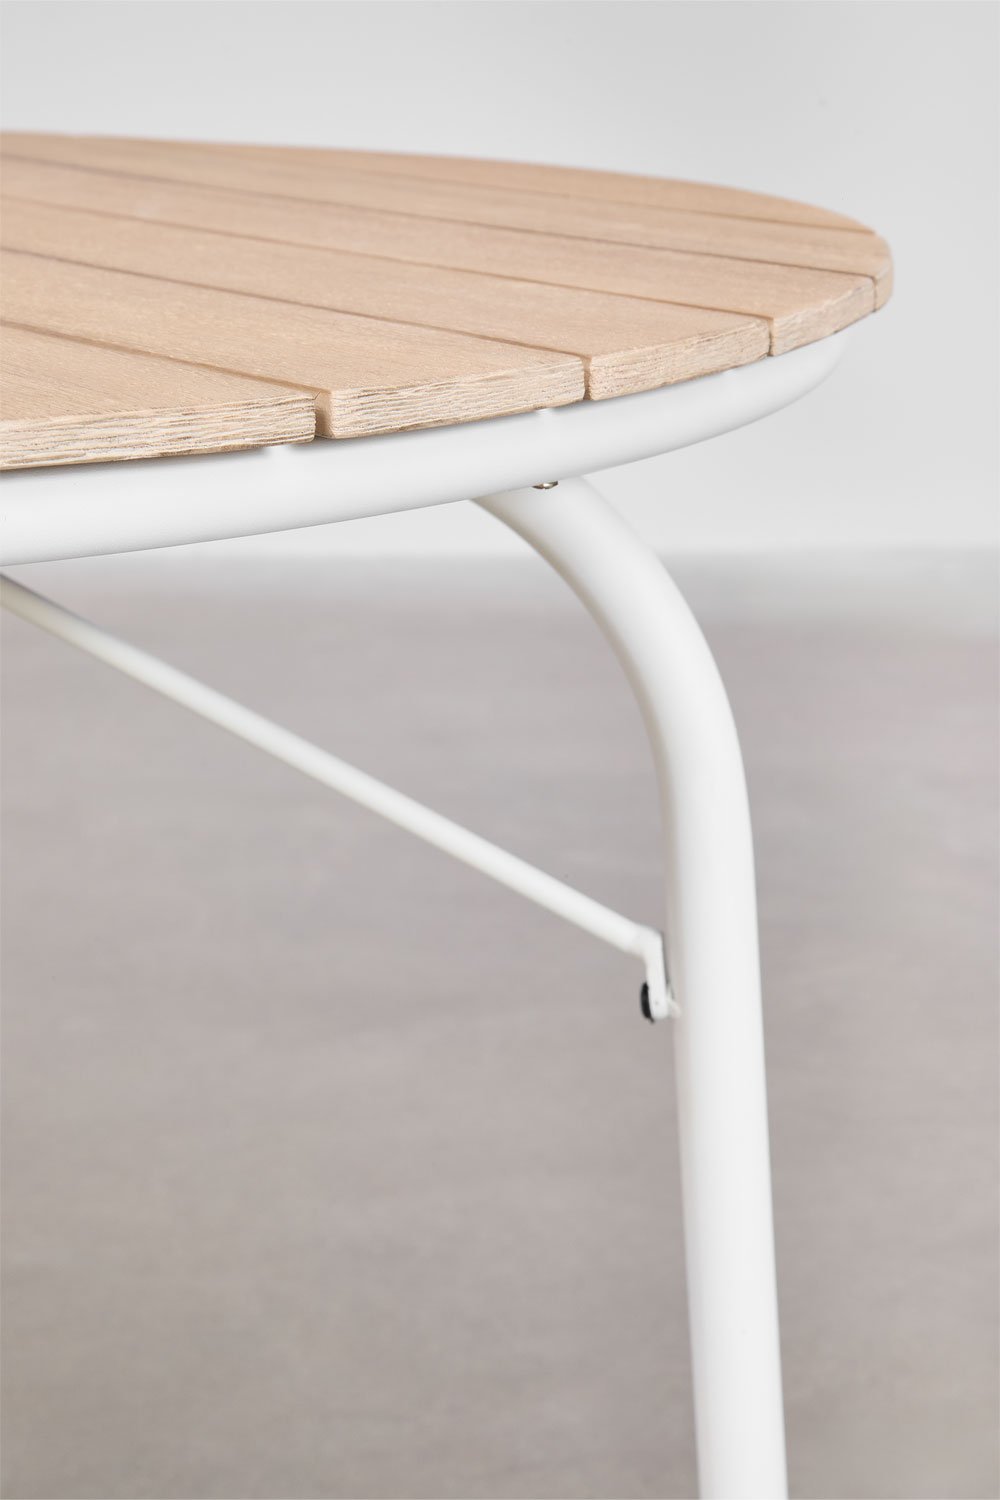 Tavolo da Pranzo Rotondo in Alluminio e Legno di Acacia (Ø100 cm) Basper, immagine della galleria 2